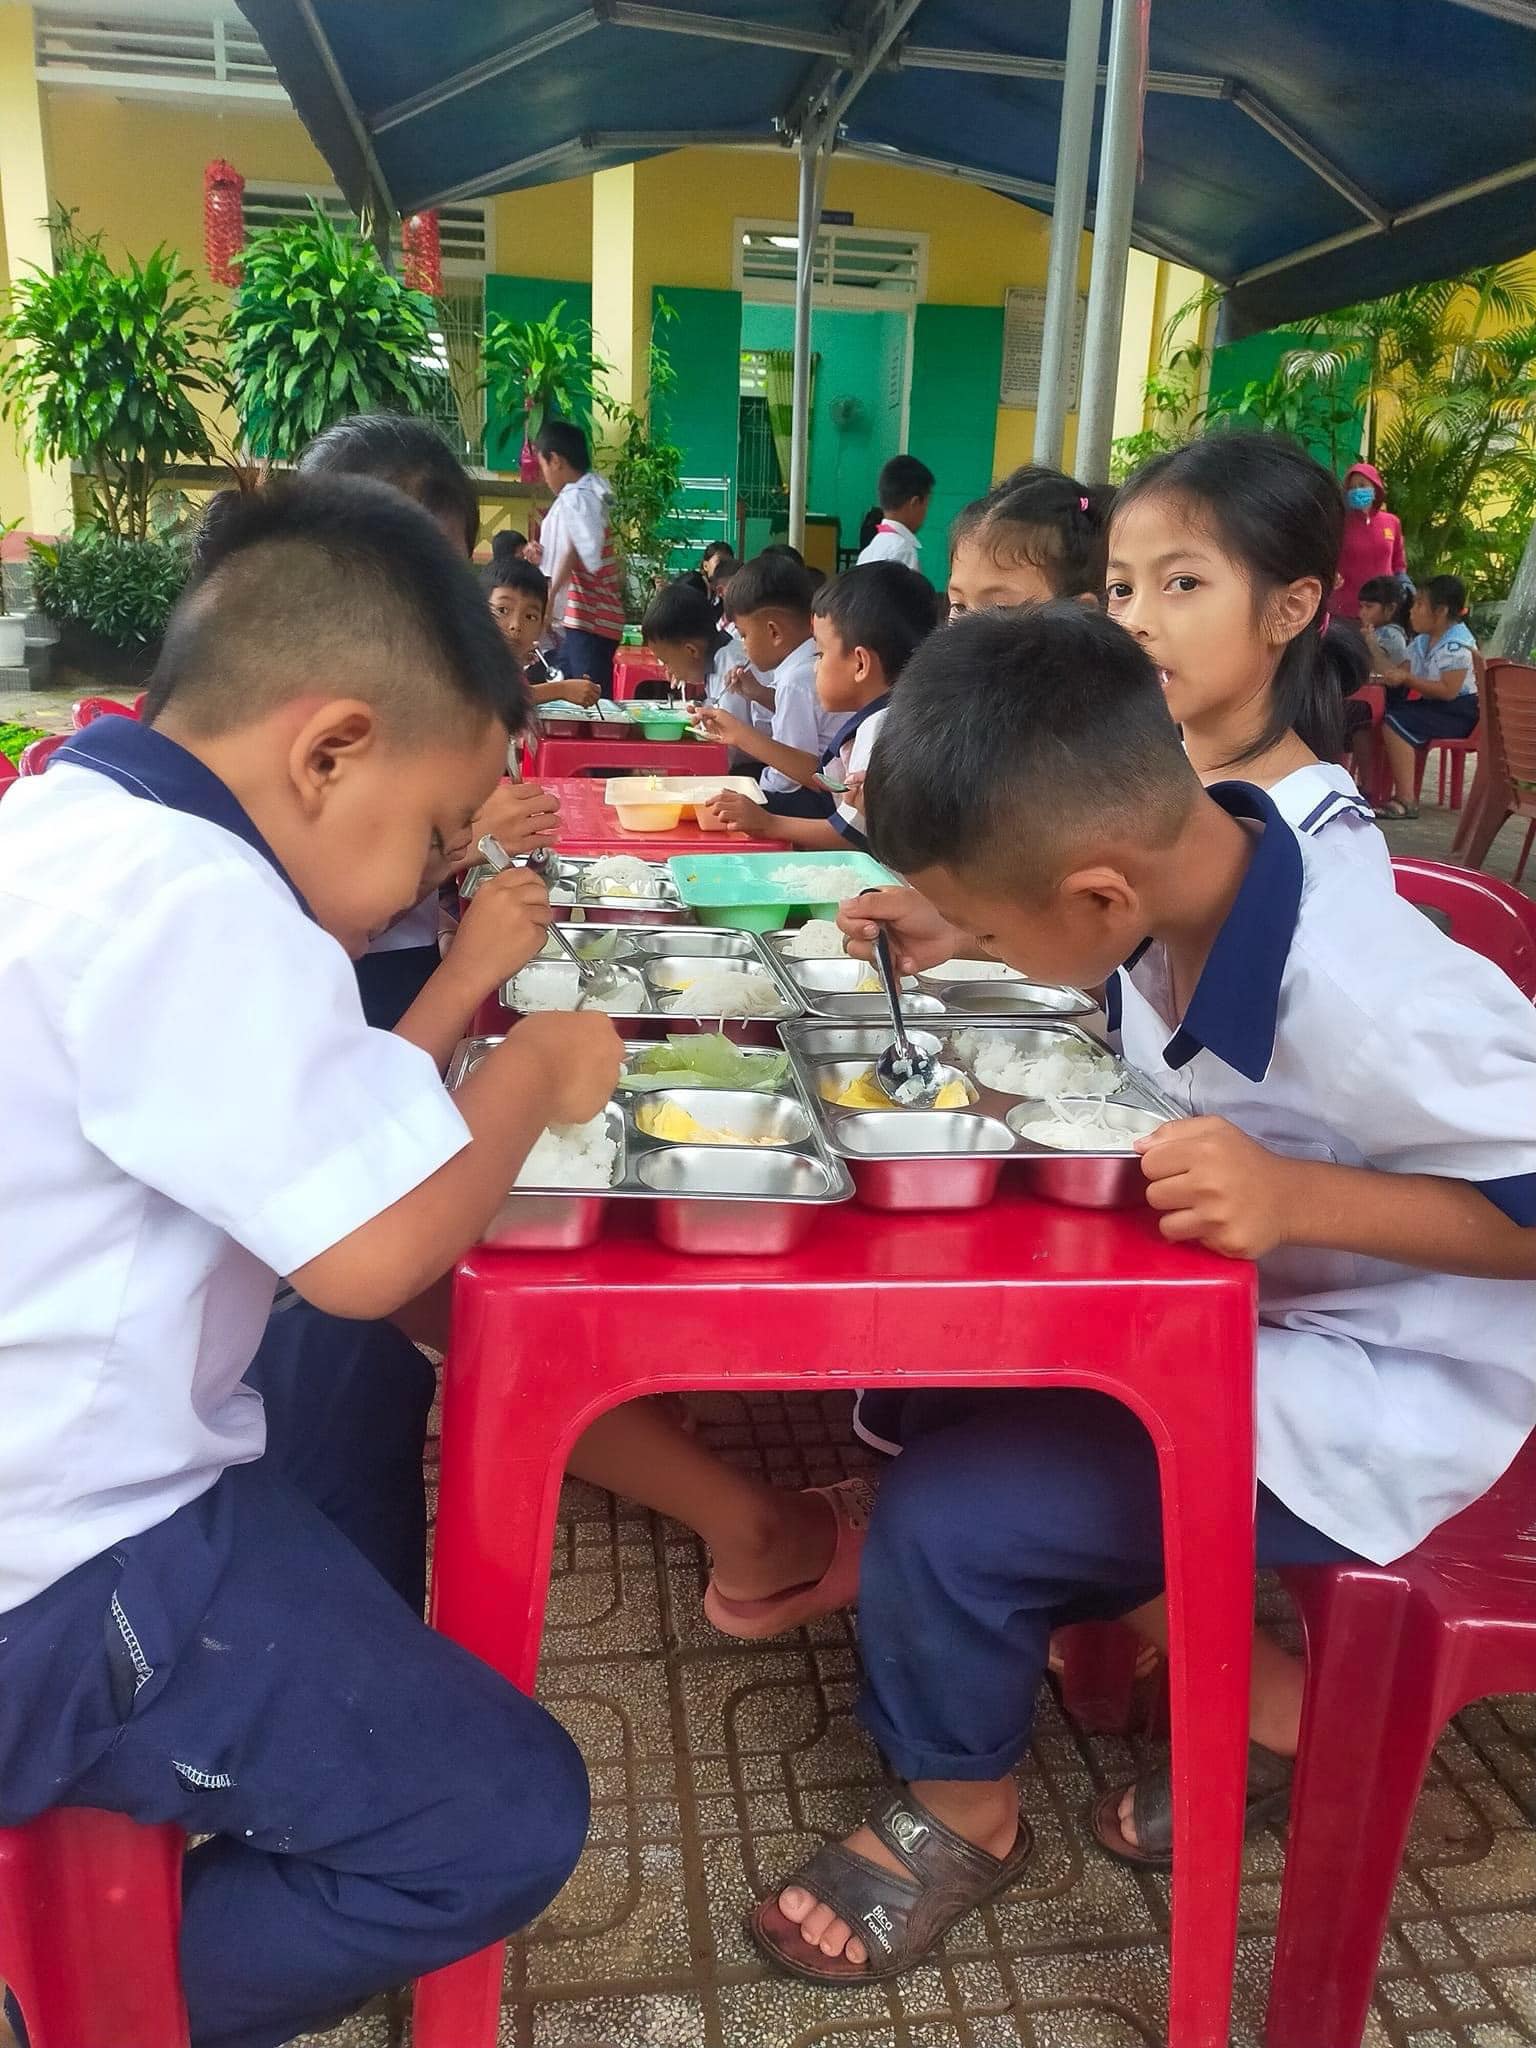 Với chỉ 150.000 đồng/tháng, hàng triệu người Việt đang “góp gạo” cùng dự án thiện nguyện này để mang đến những bữa cơm no cho hơn 4.000 trẻ vùng cao xứ Huế - ảnh 3